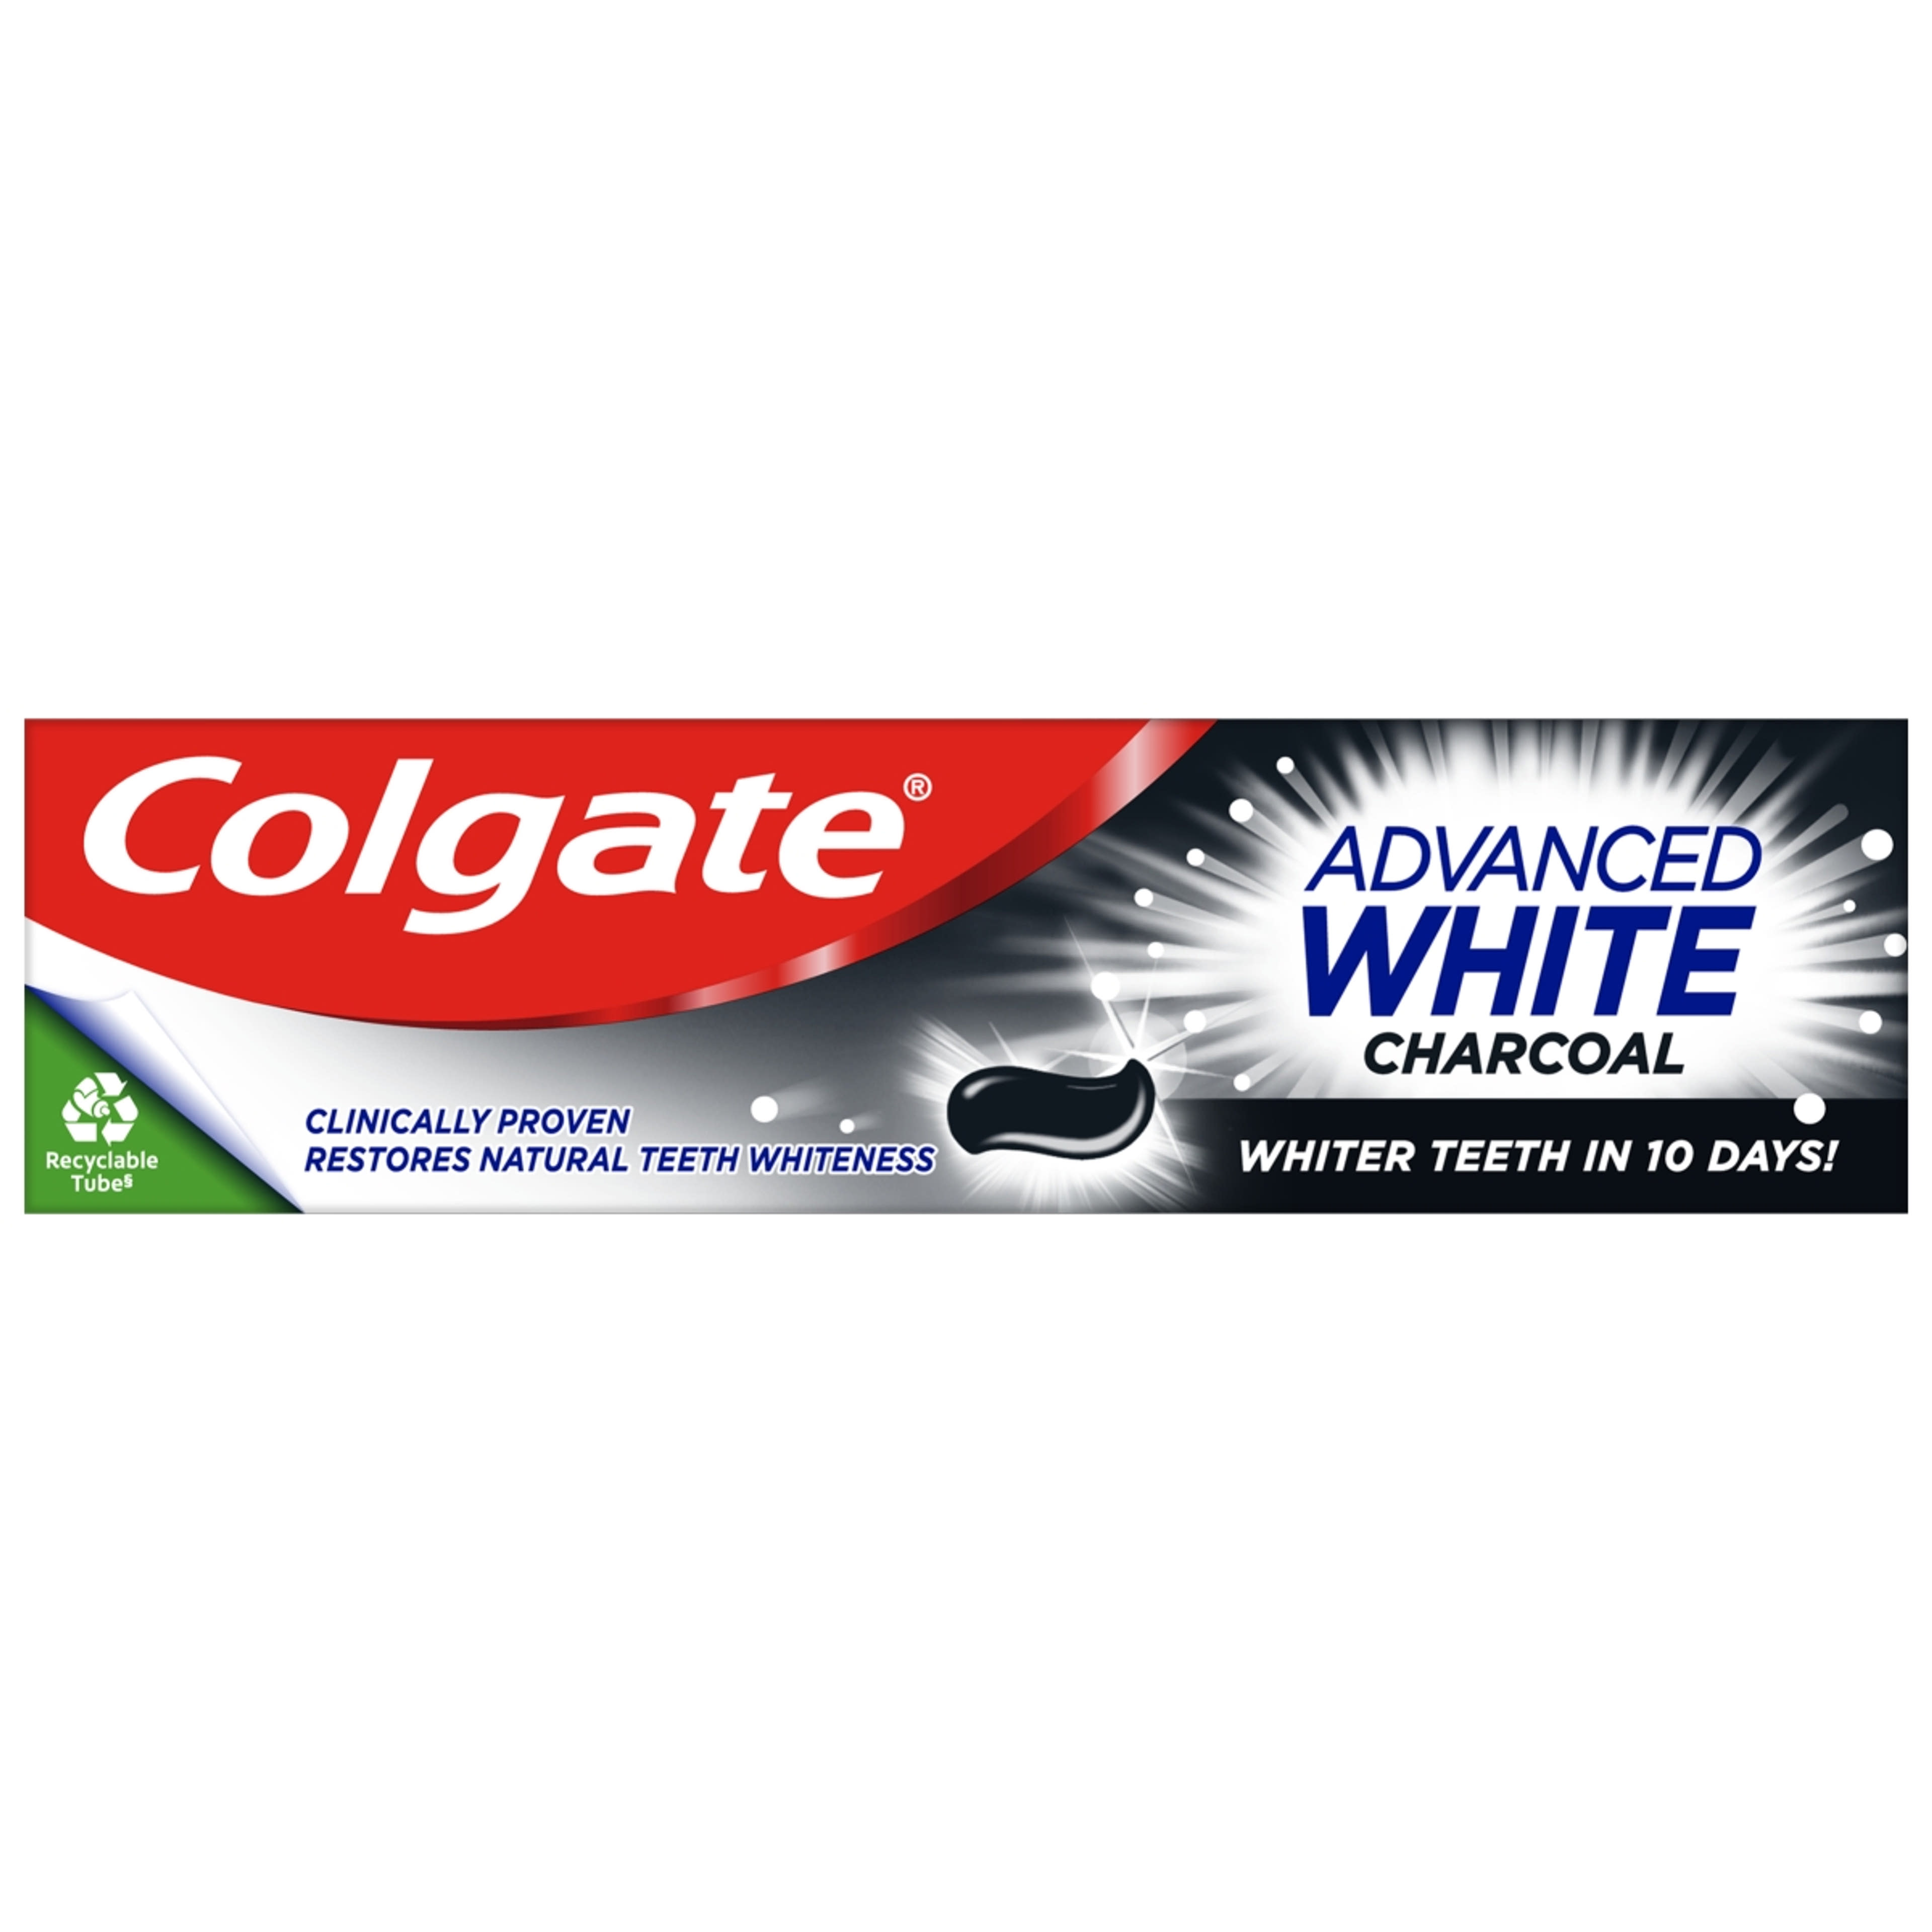 Colgate Advanced Whitening Charcoal fogkrém - 75 ml